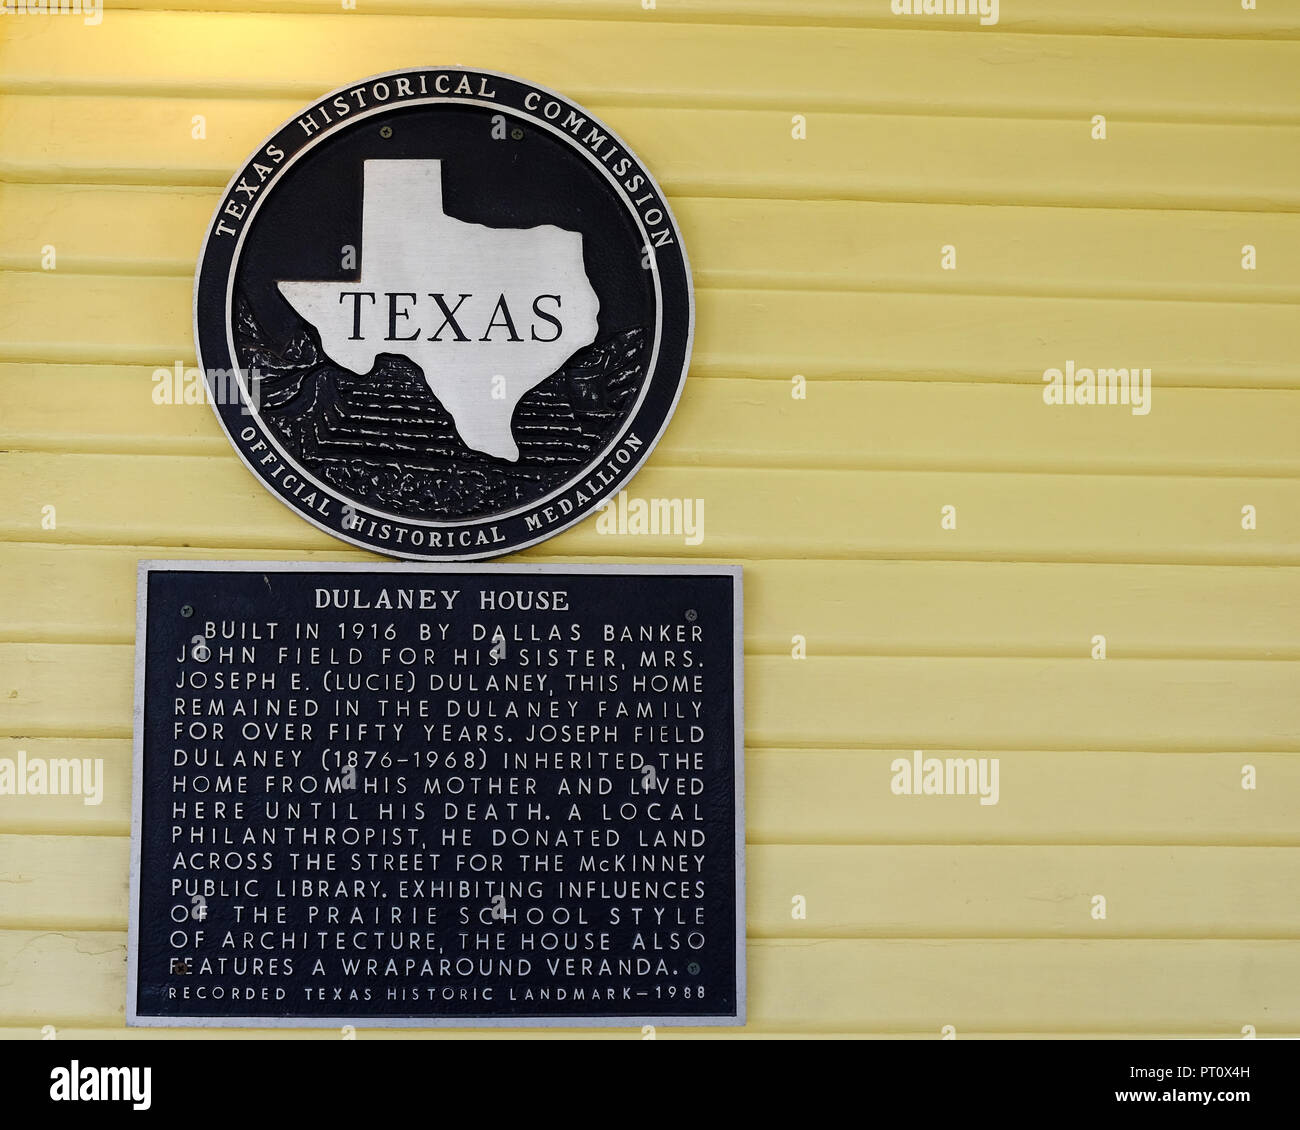 Offizielle historische Medaillon von der Texas historischen Kommission an der Wand der Dulaney Haus Kastanie Square Historic Village, McKinney Texas. Stockfoto